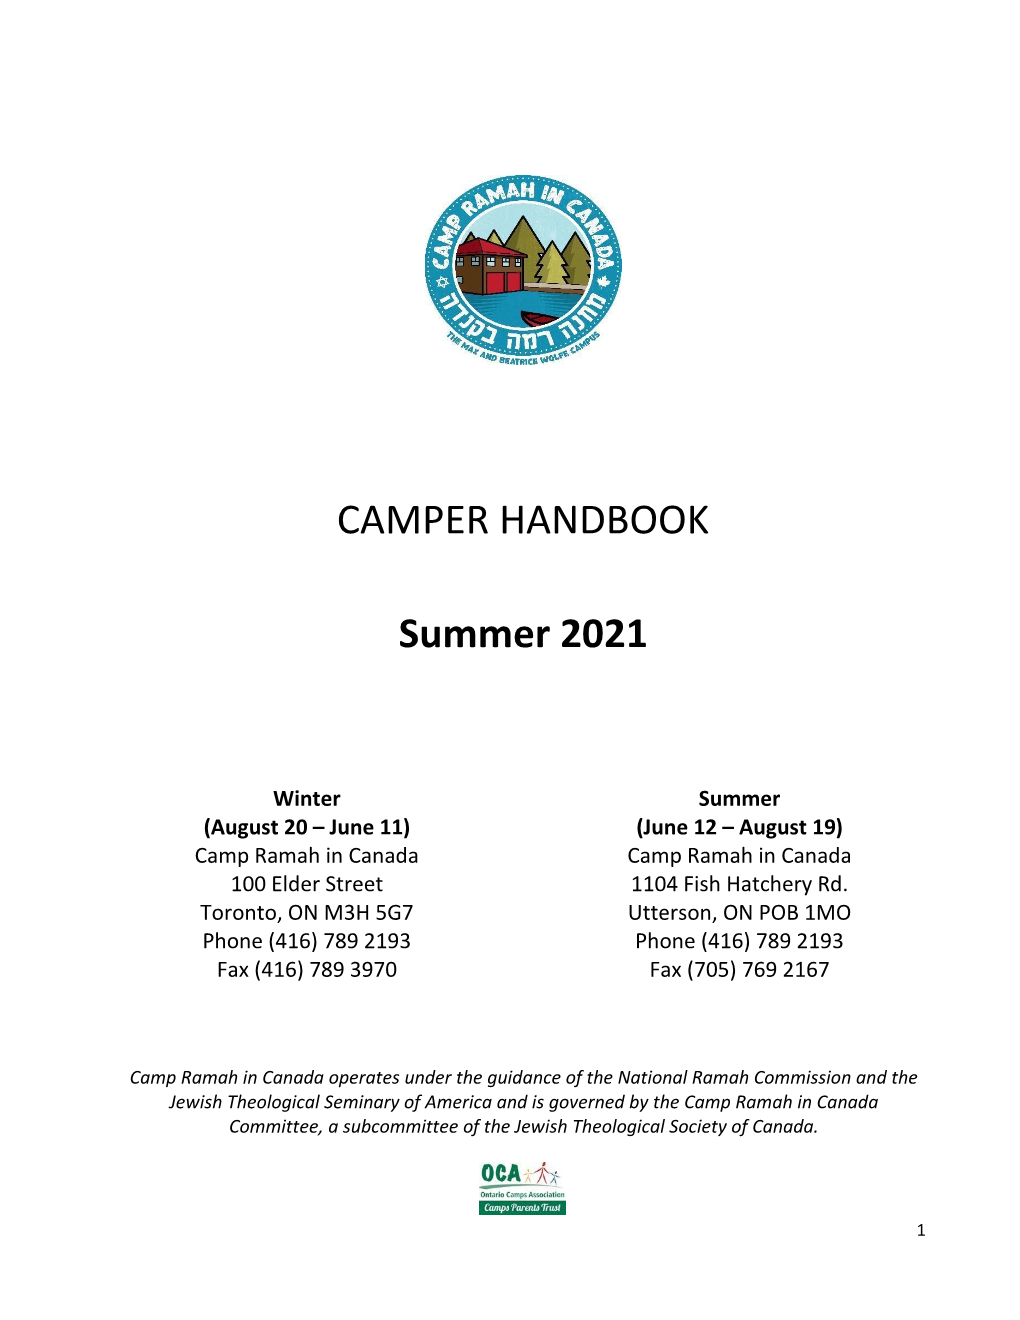 CAMPER HANDBOOK Summer 2021